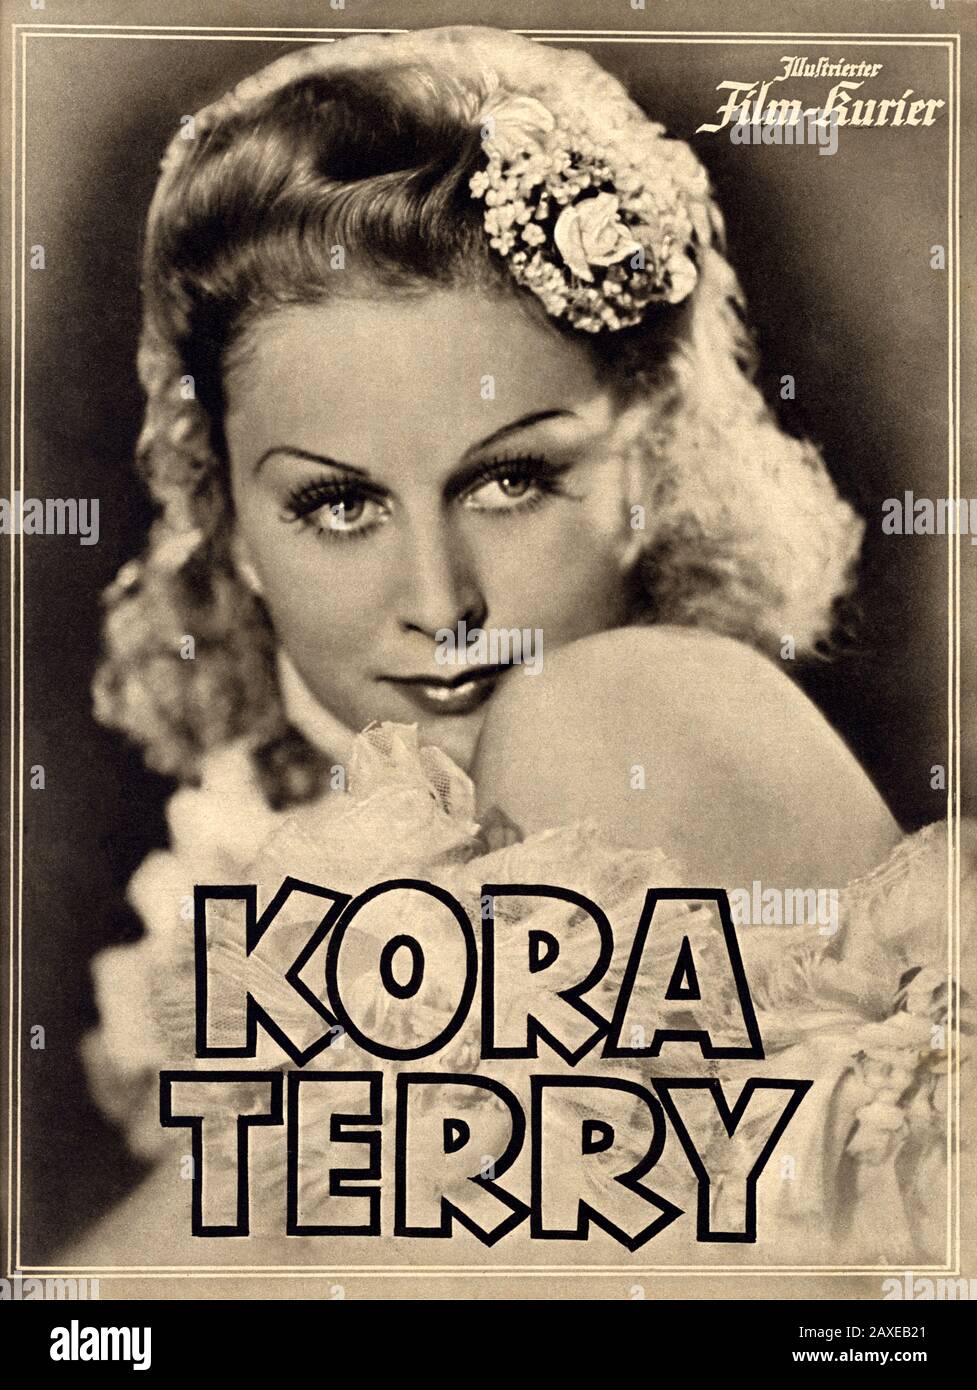 1940 , ALLEMAGNE : la célèbre actrice hongroise MARIKA ROKK ( 1913 - 2004 ) à KORA TERRY de Georg Jacoby , d'un roman de Hans Caspar von Zobeltitz . Couverture du film ILLUSTRIERTE FILM-BUHNE , 1940 . À côté de sa carrière de cinéma, Marika Rokk est devenue l'une des chanteuses Operetta les plus célèbres d'Europe. Elle se produit sur scène jusqu'en 1986 .- ATTRICE - FILM - CINÉMA - portrait - ritratto - CINÉMA - FILM - locandina pubblicità aria cinematografica - POSTER -copertina - couverture - sourire - sorriso - blond - bionda - NAZISMO - NAZISME - UFA ---- Archivio GBB Banque D'Images